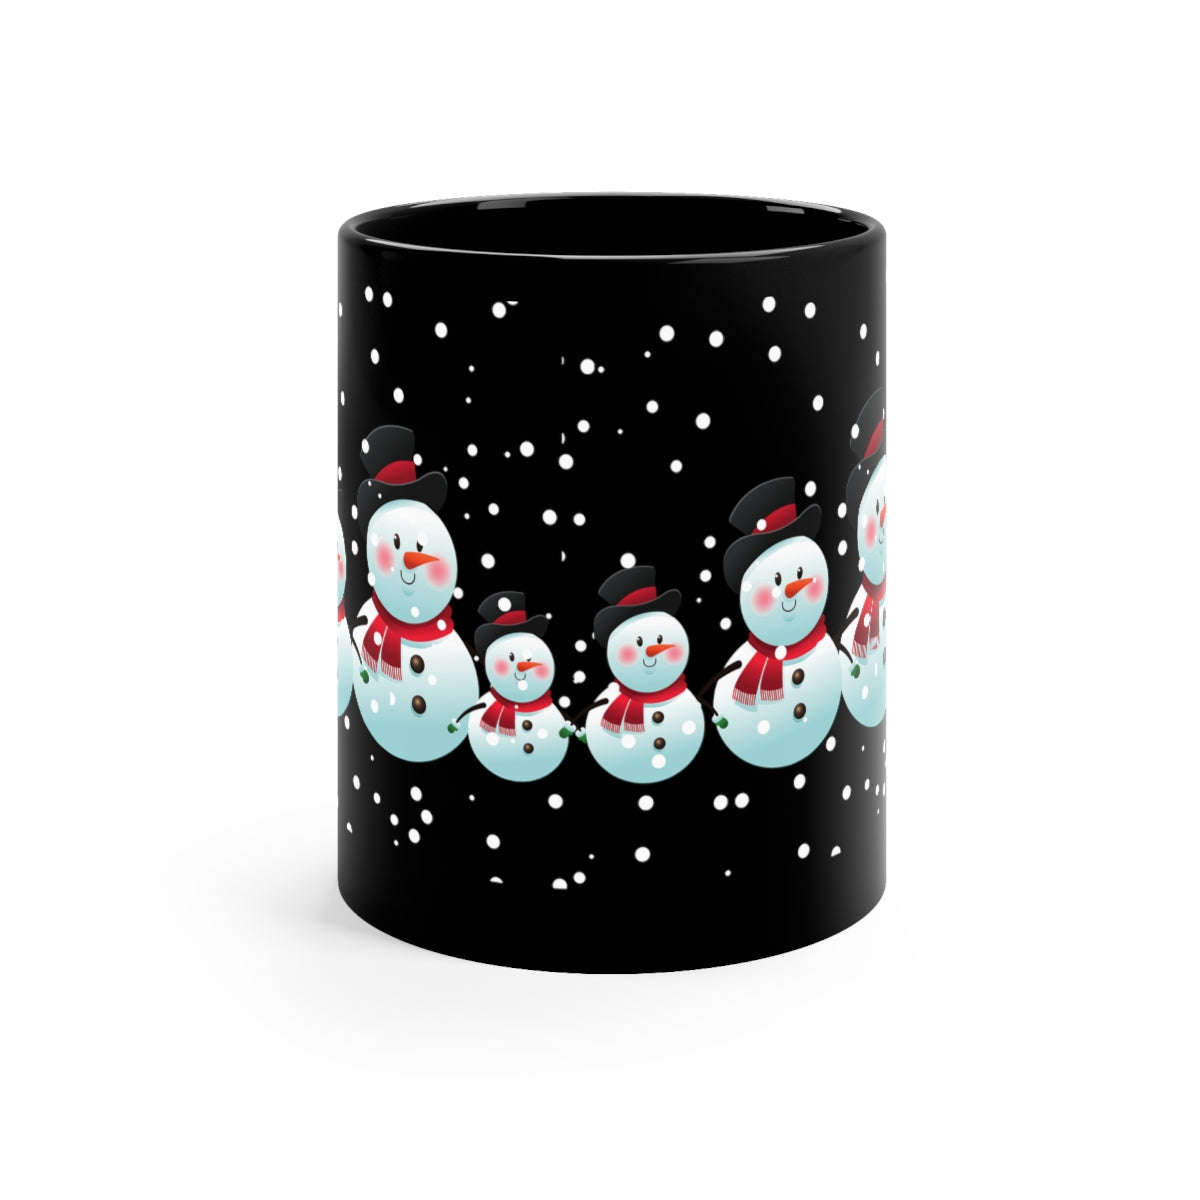 Snowman Mug / Black Christmas Mug / Snowman Decor